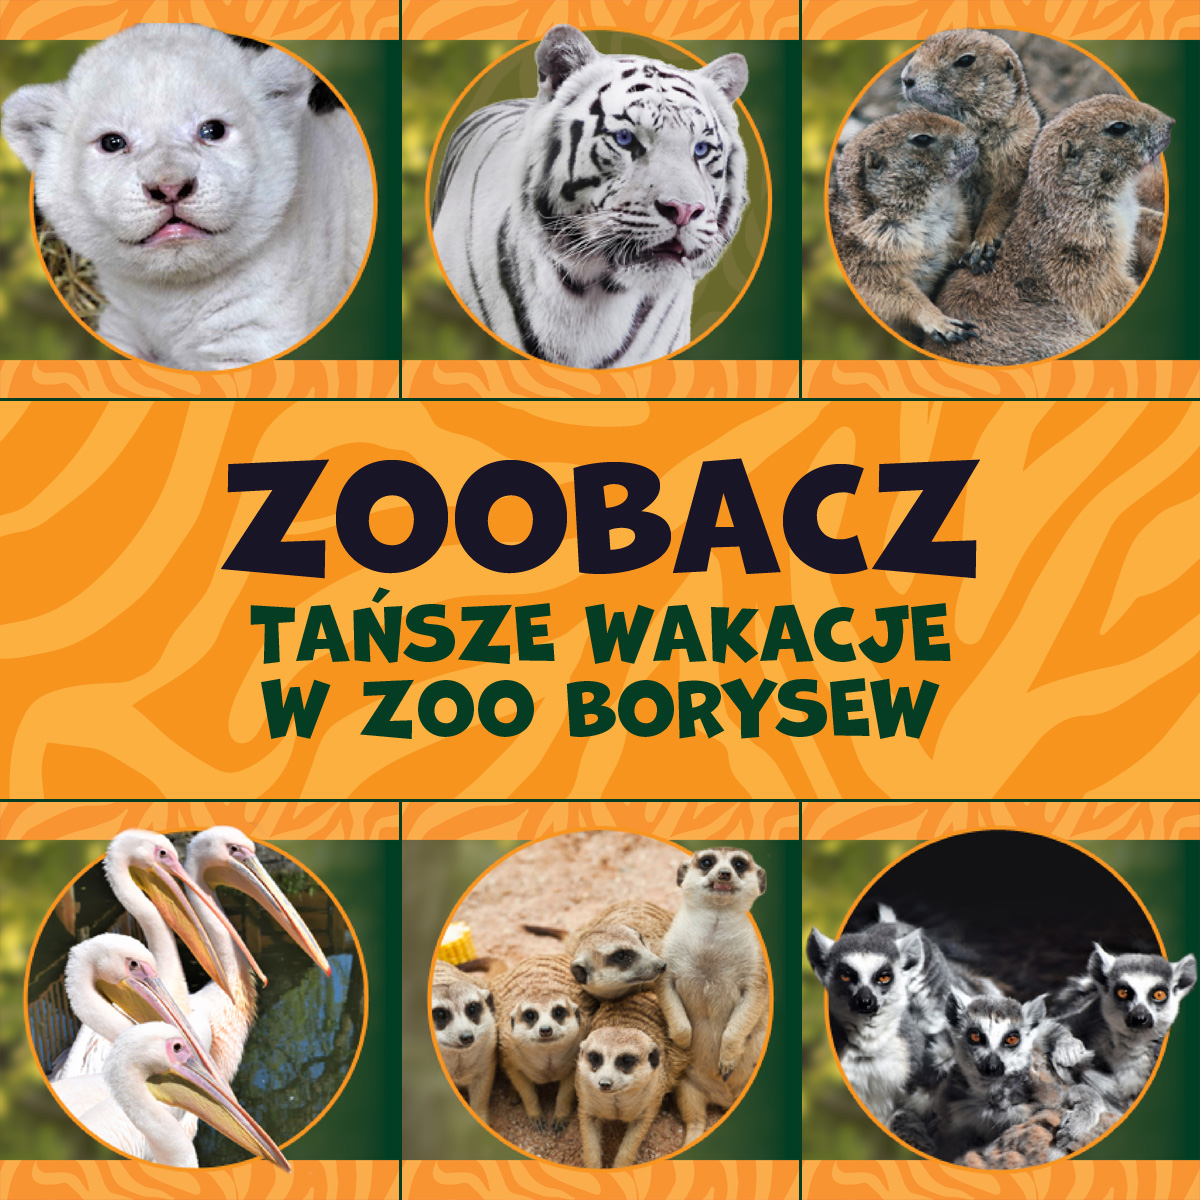 Tańsze bilety w Zoo Borysew – również we wrześniu!